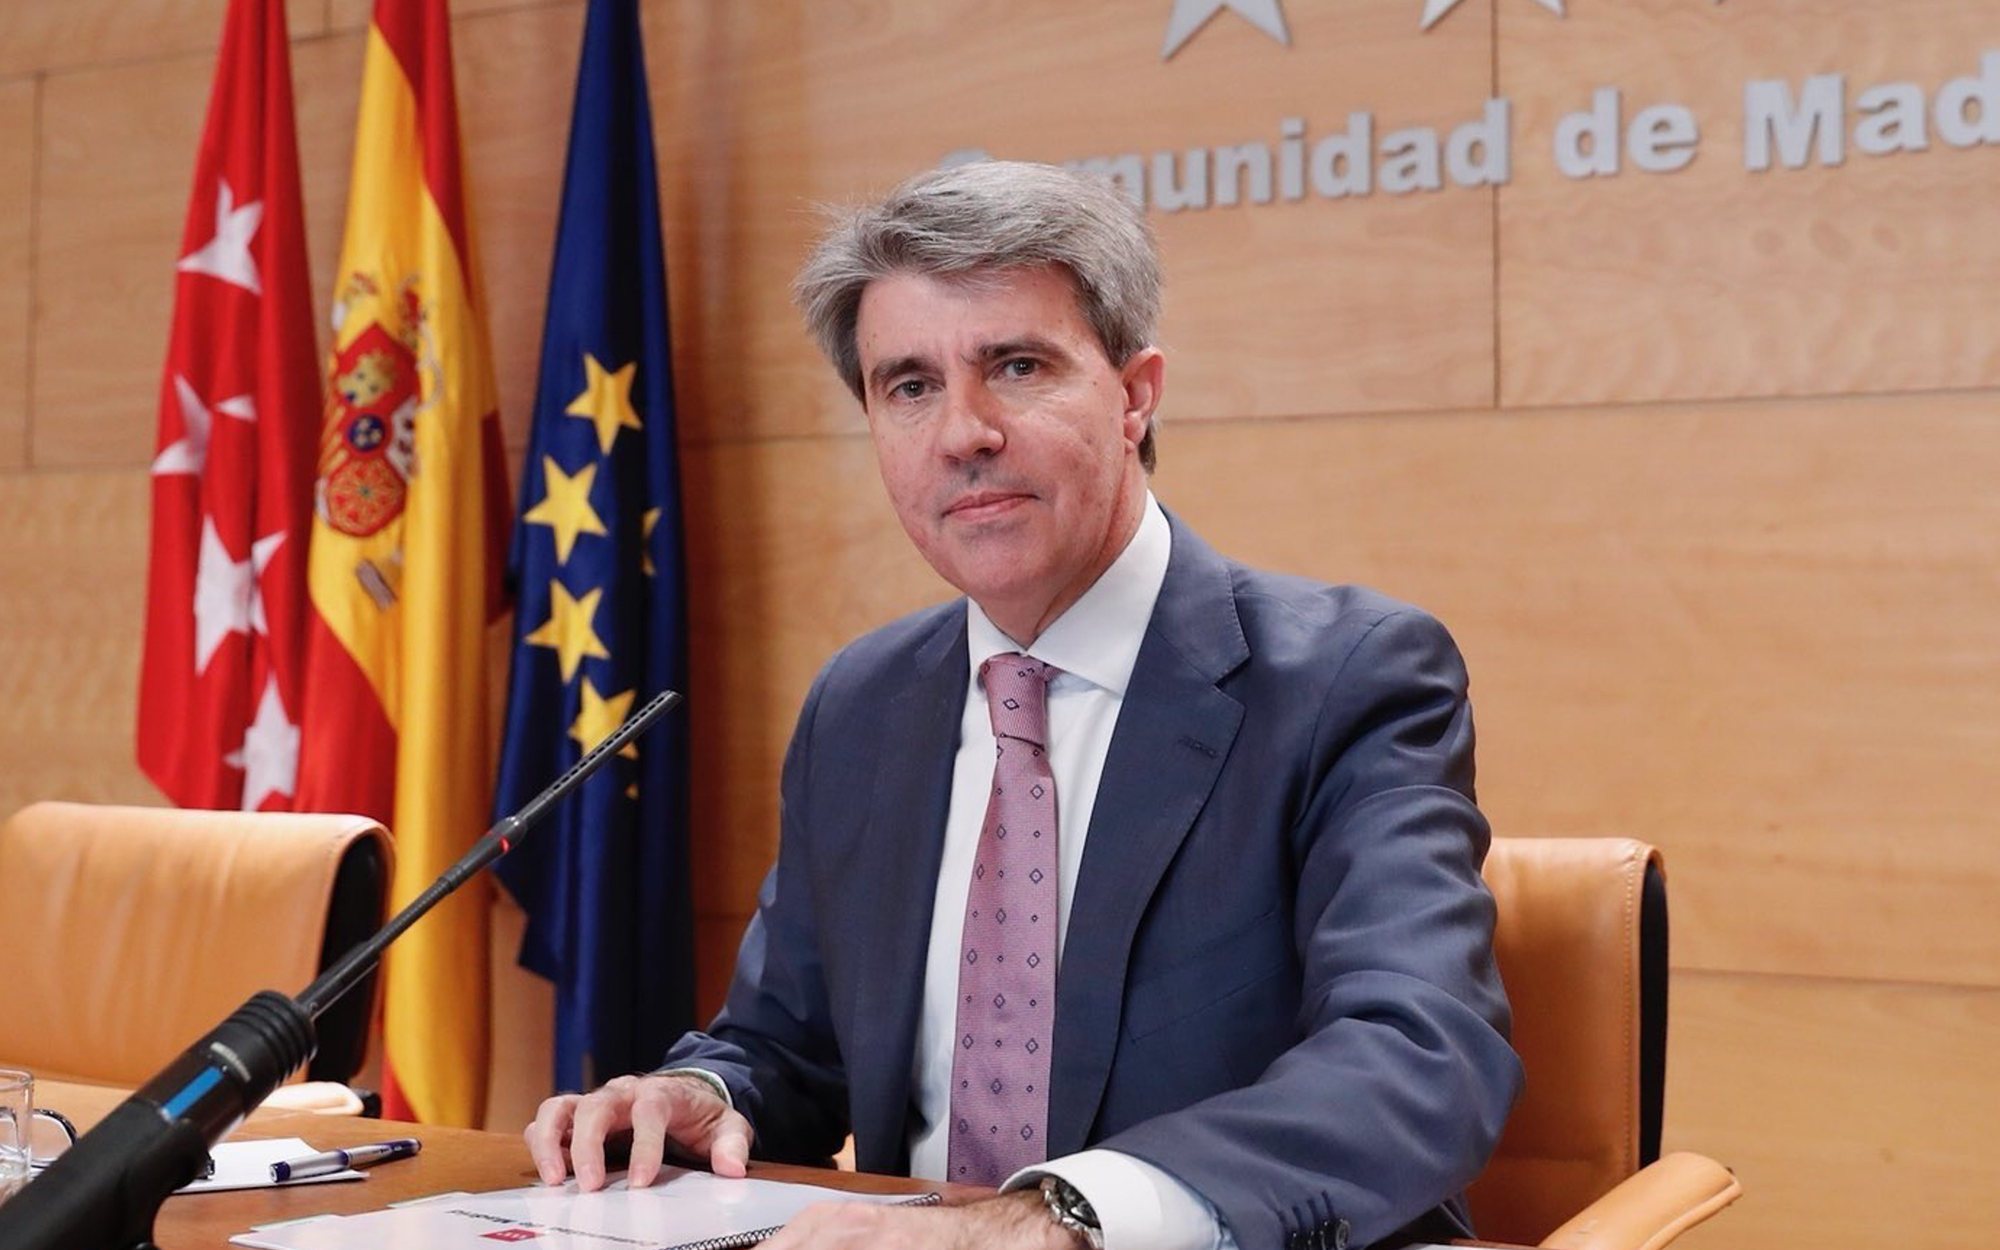 'Todo es mentira' ficha a Ángel Garrido, expresidente de la Comunidad de Madrid, tras abandonar Ciudadanos